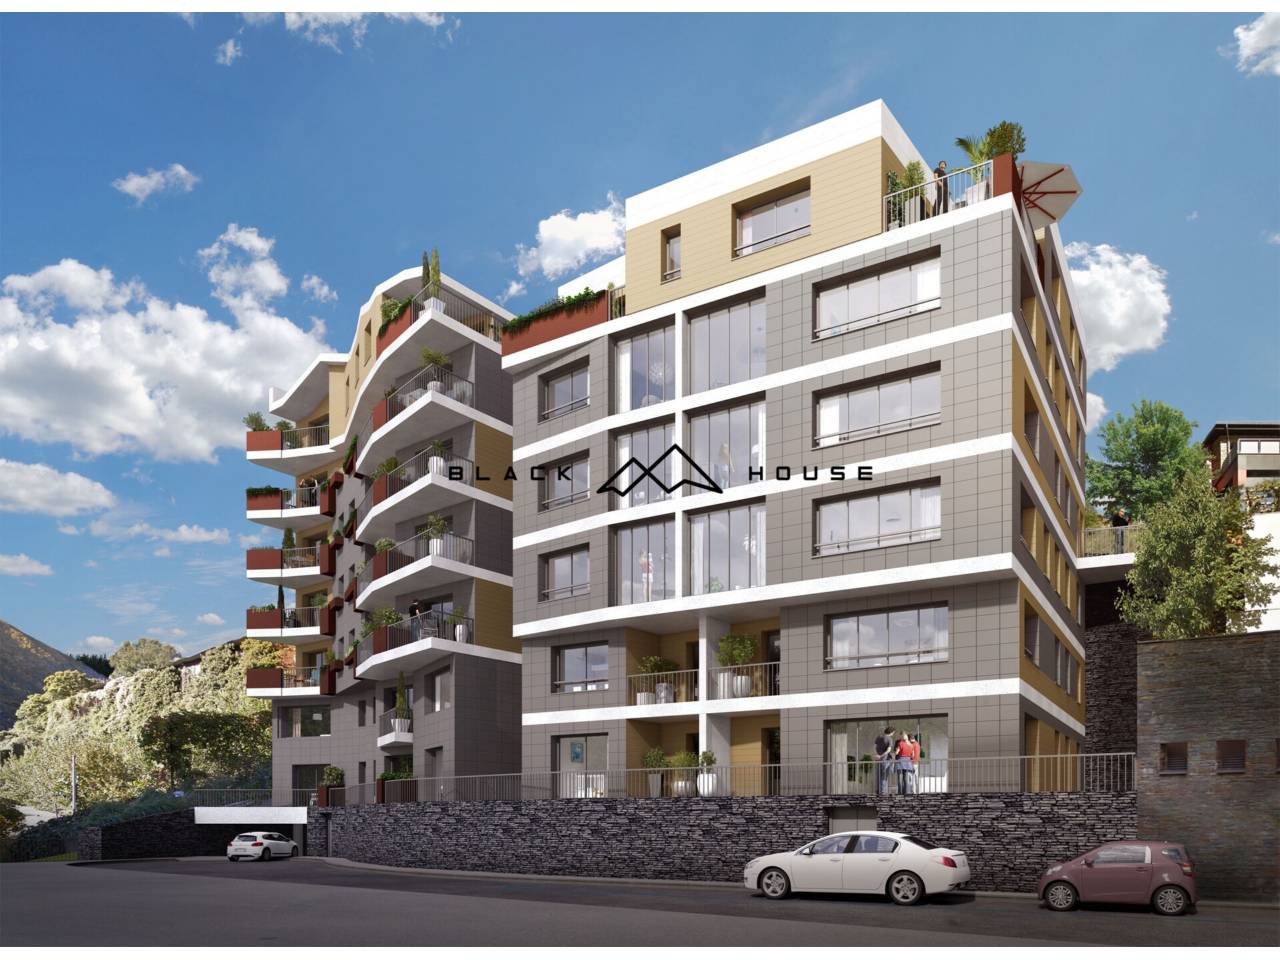 Fabuleux nouveau développement de luxe, situé dans un quartier résidentiel très calme et ensoleillé d´Escaldes. 